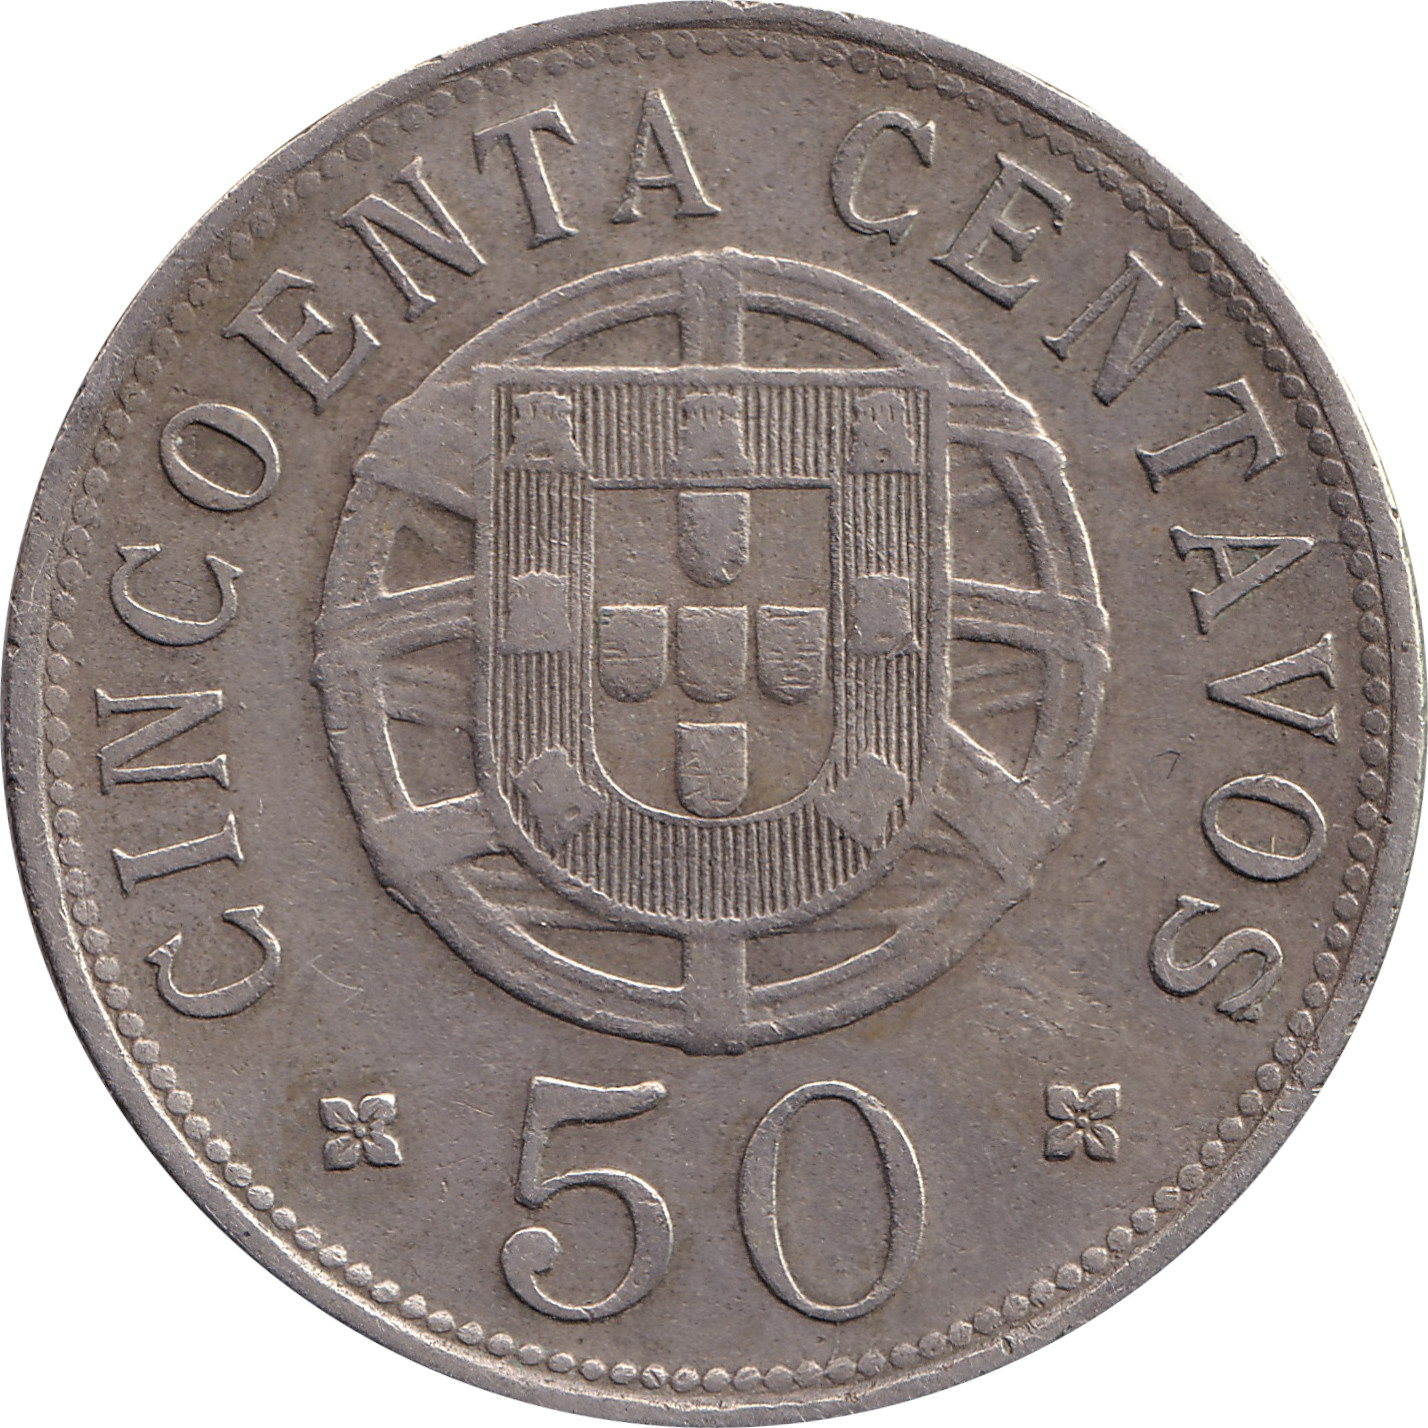 50 centavos - Liberty and shield - CINCUENTA CENTAVOS